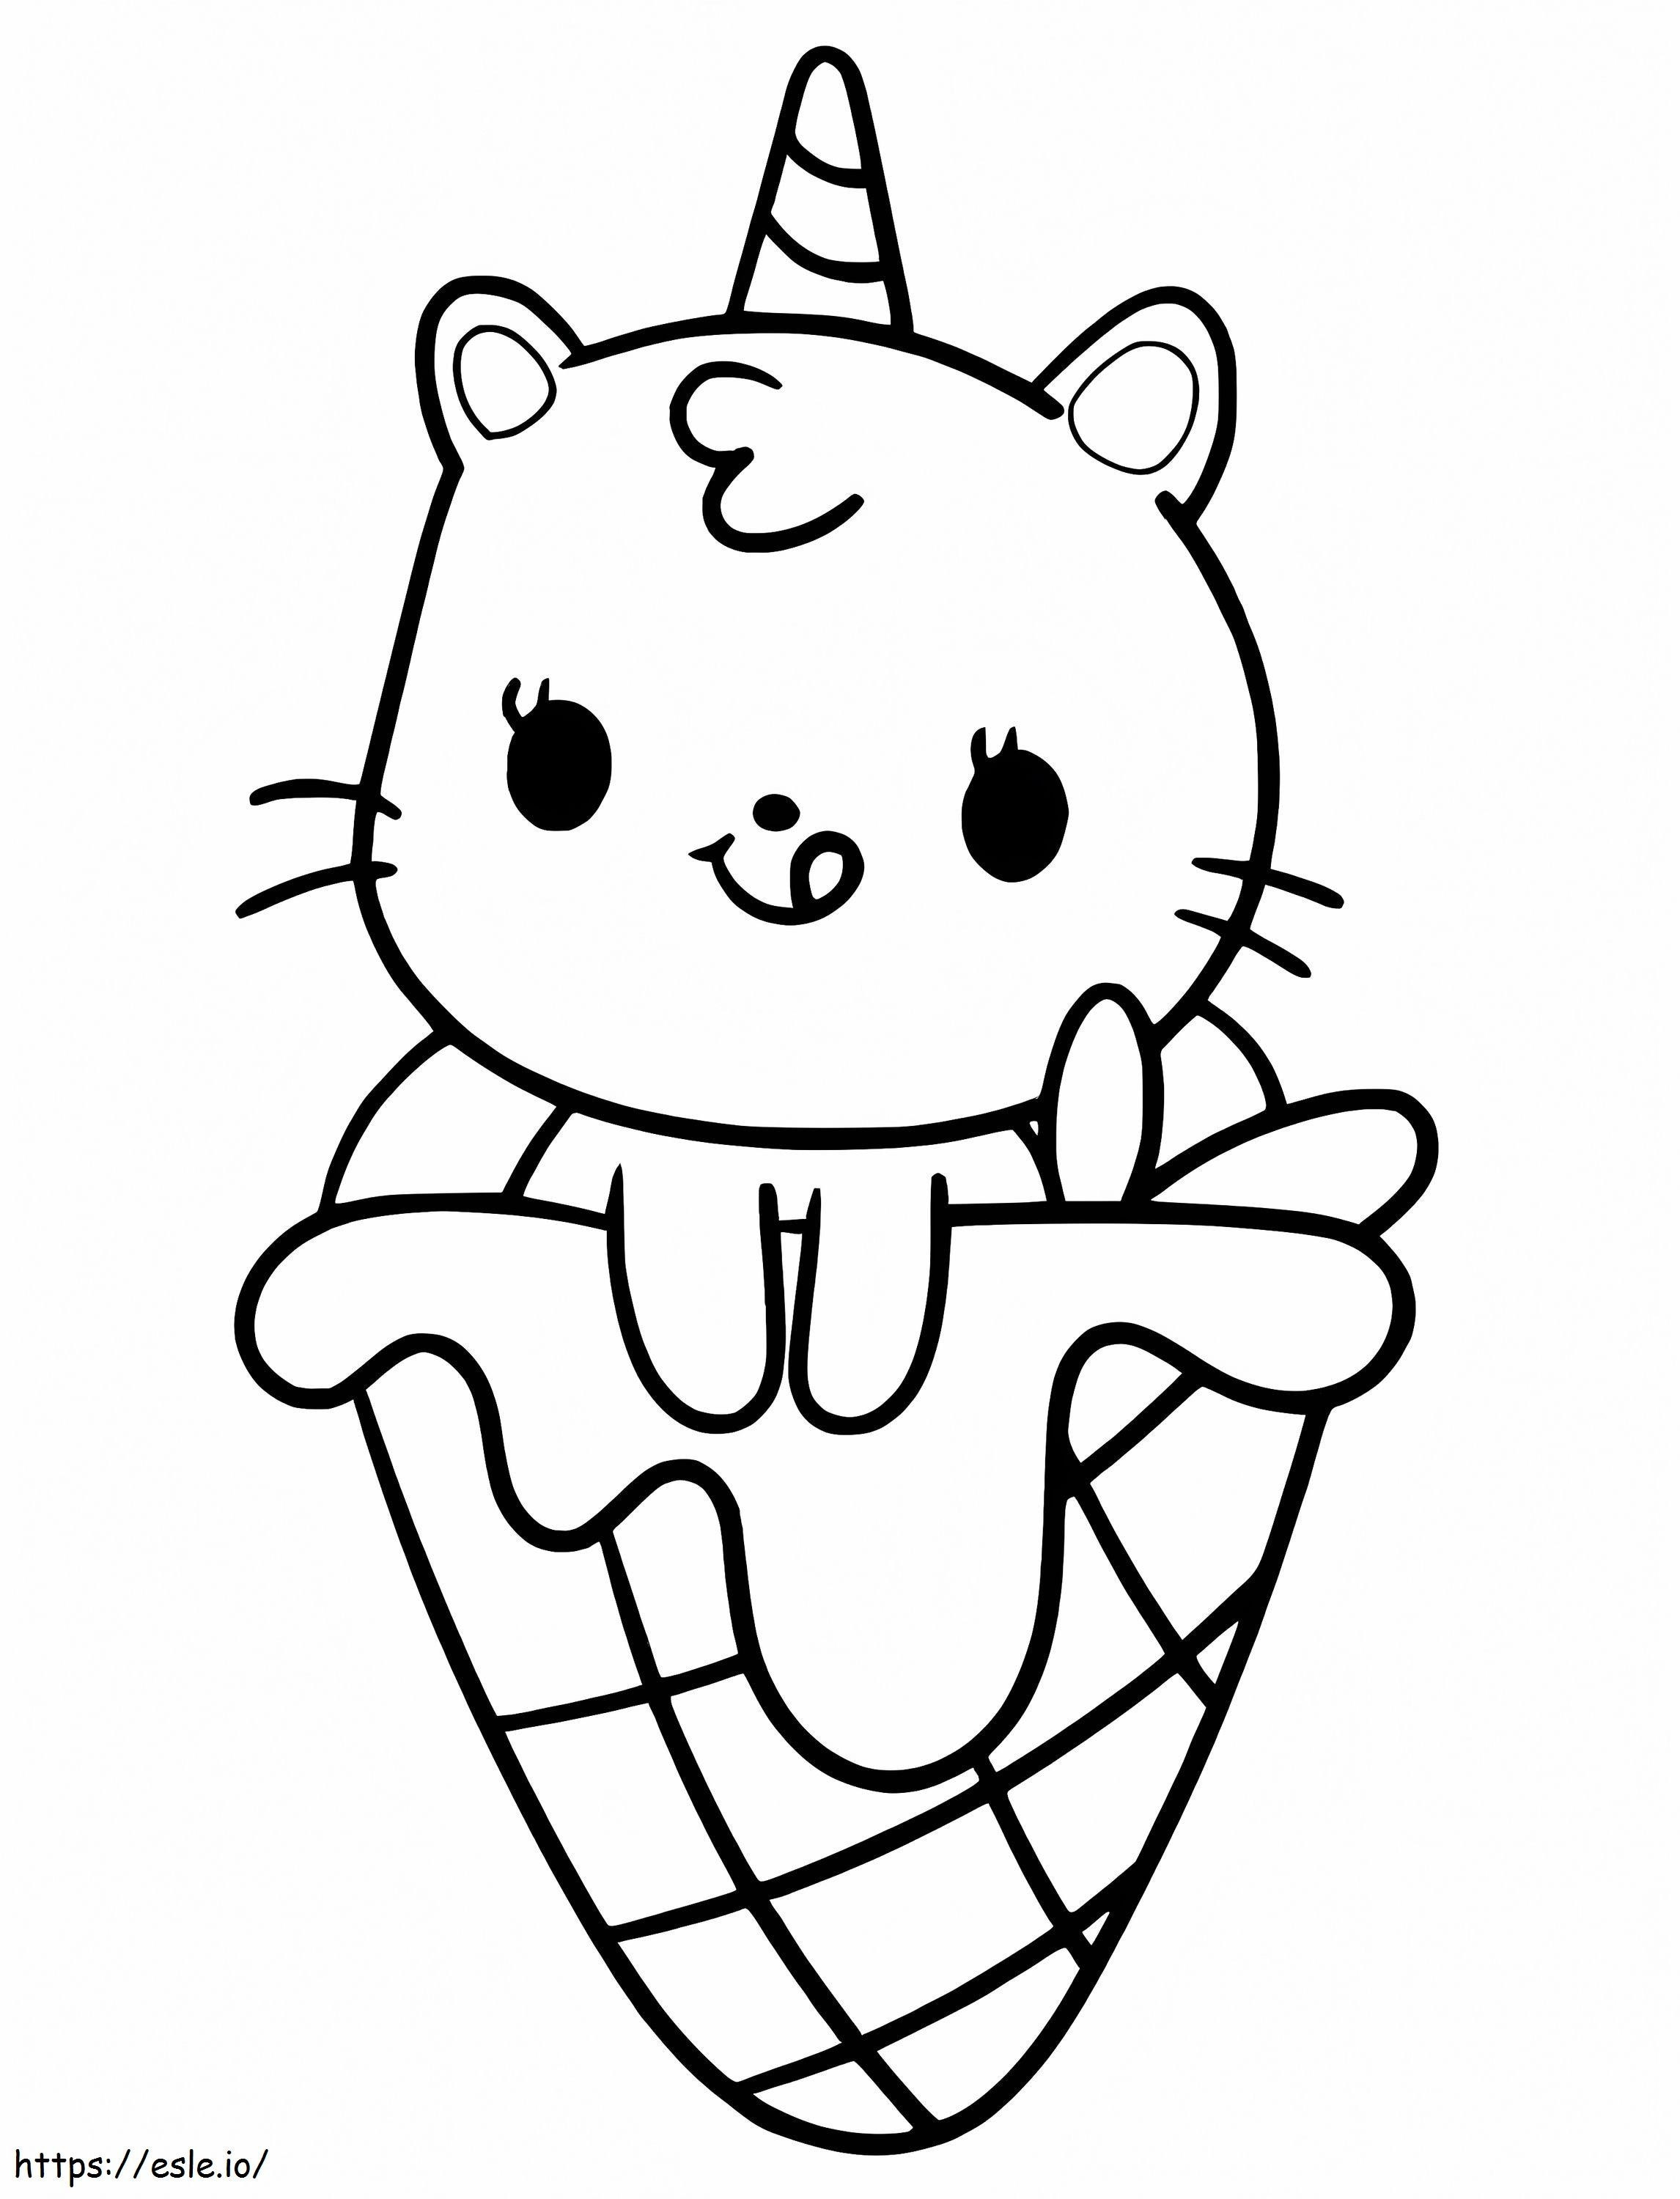 Eiscreme-Einhorn-Katze ausmalbilder